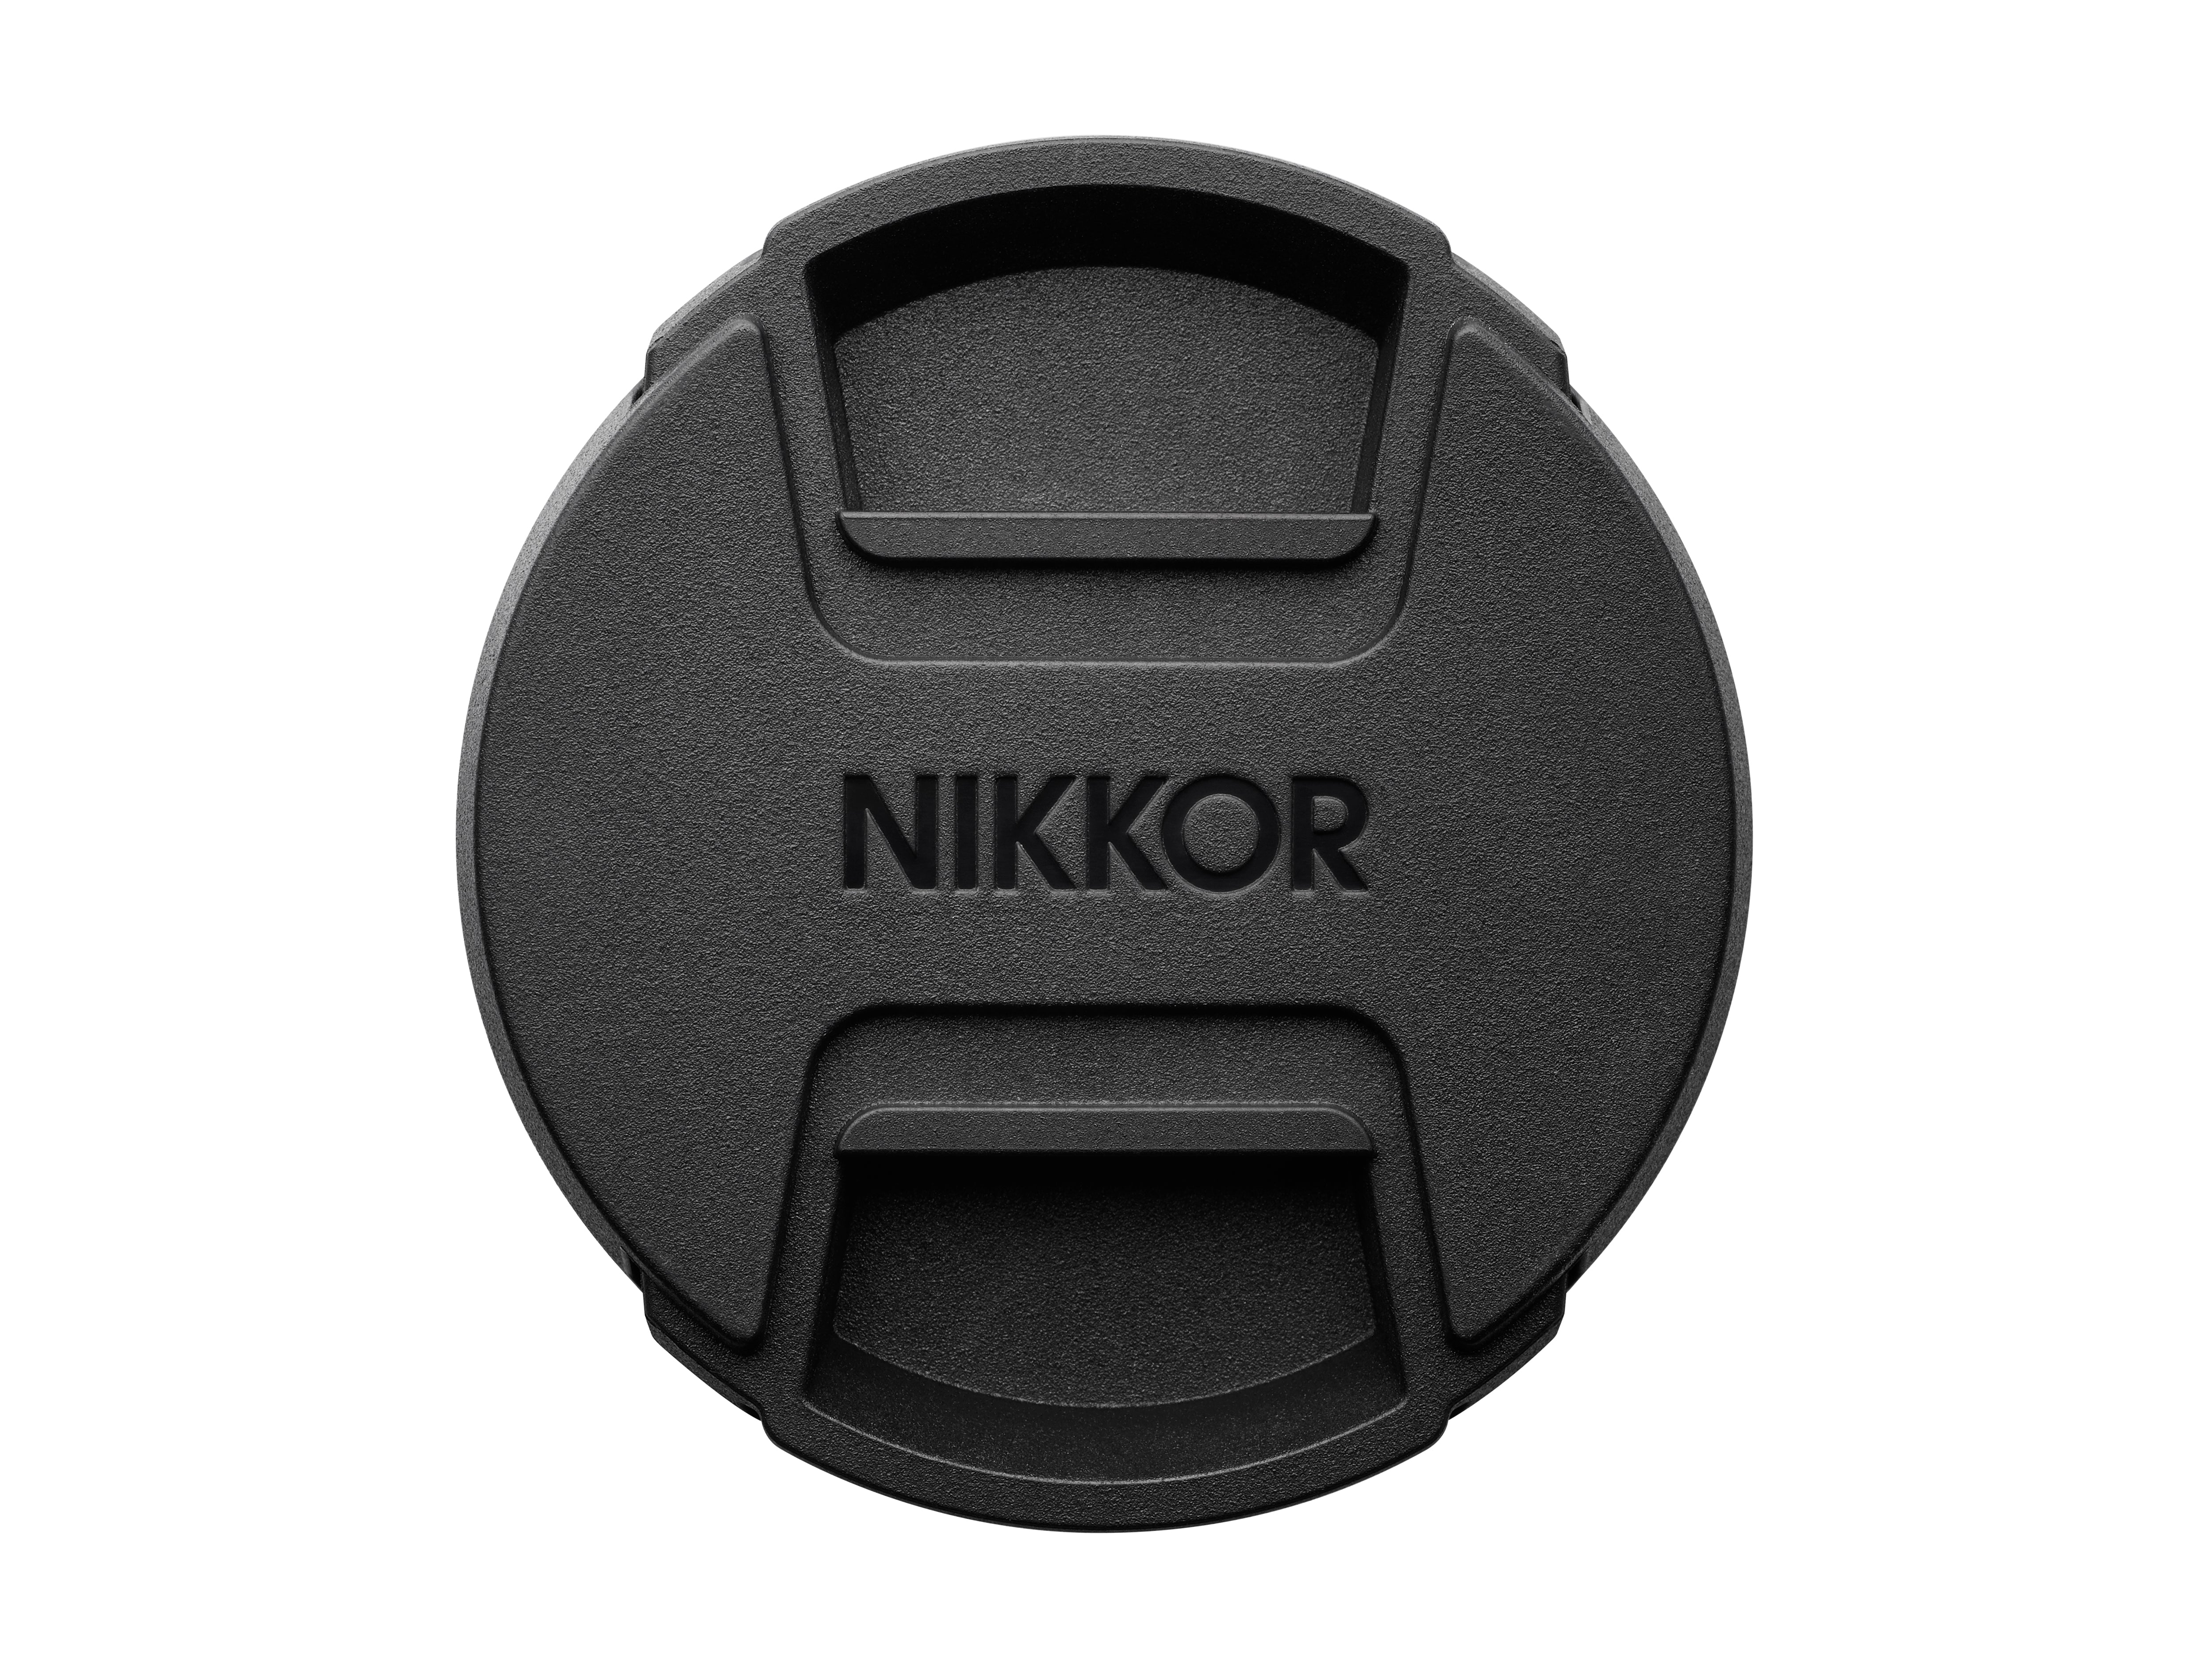 Nikon NIKKOR Z DX 24mm f1.7 Lens